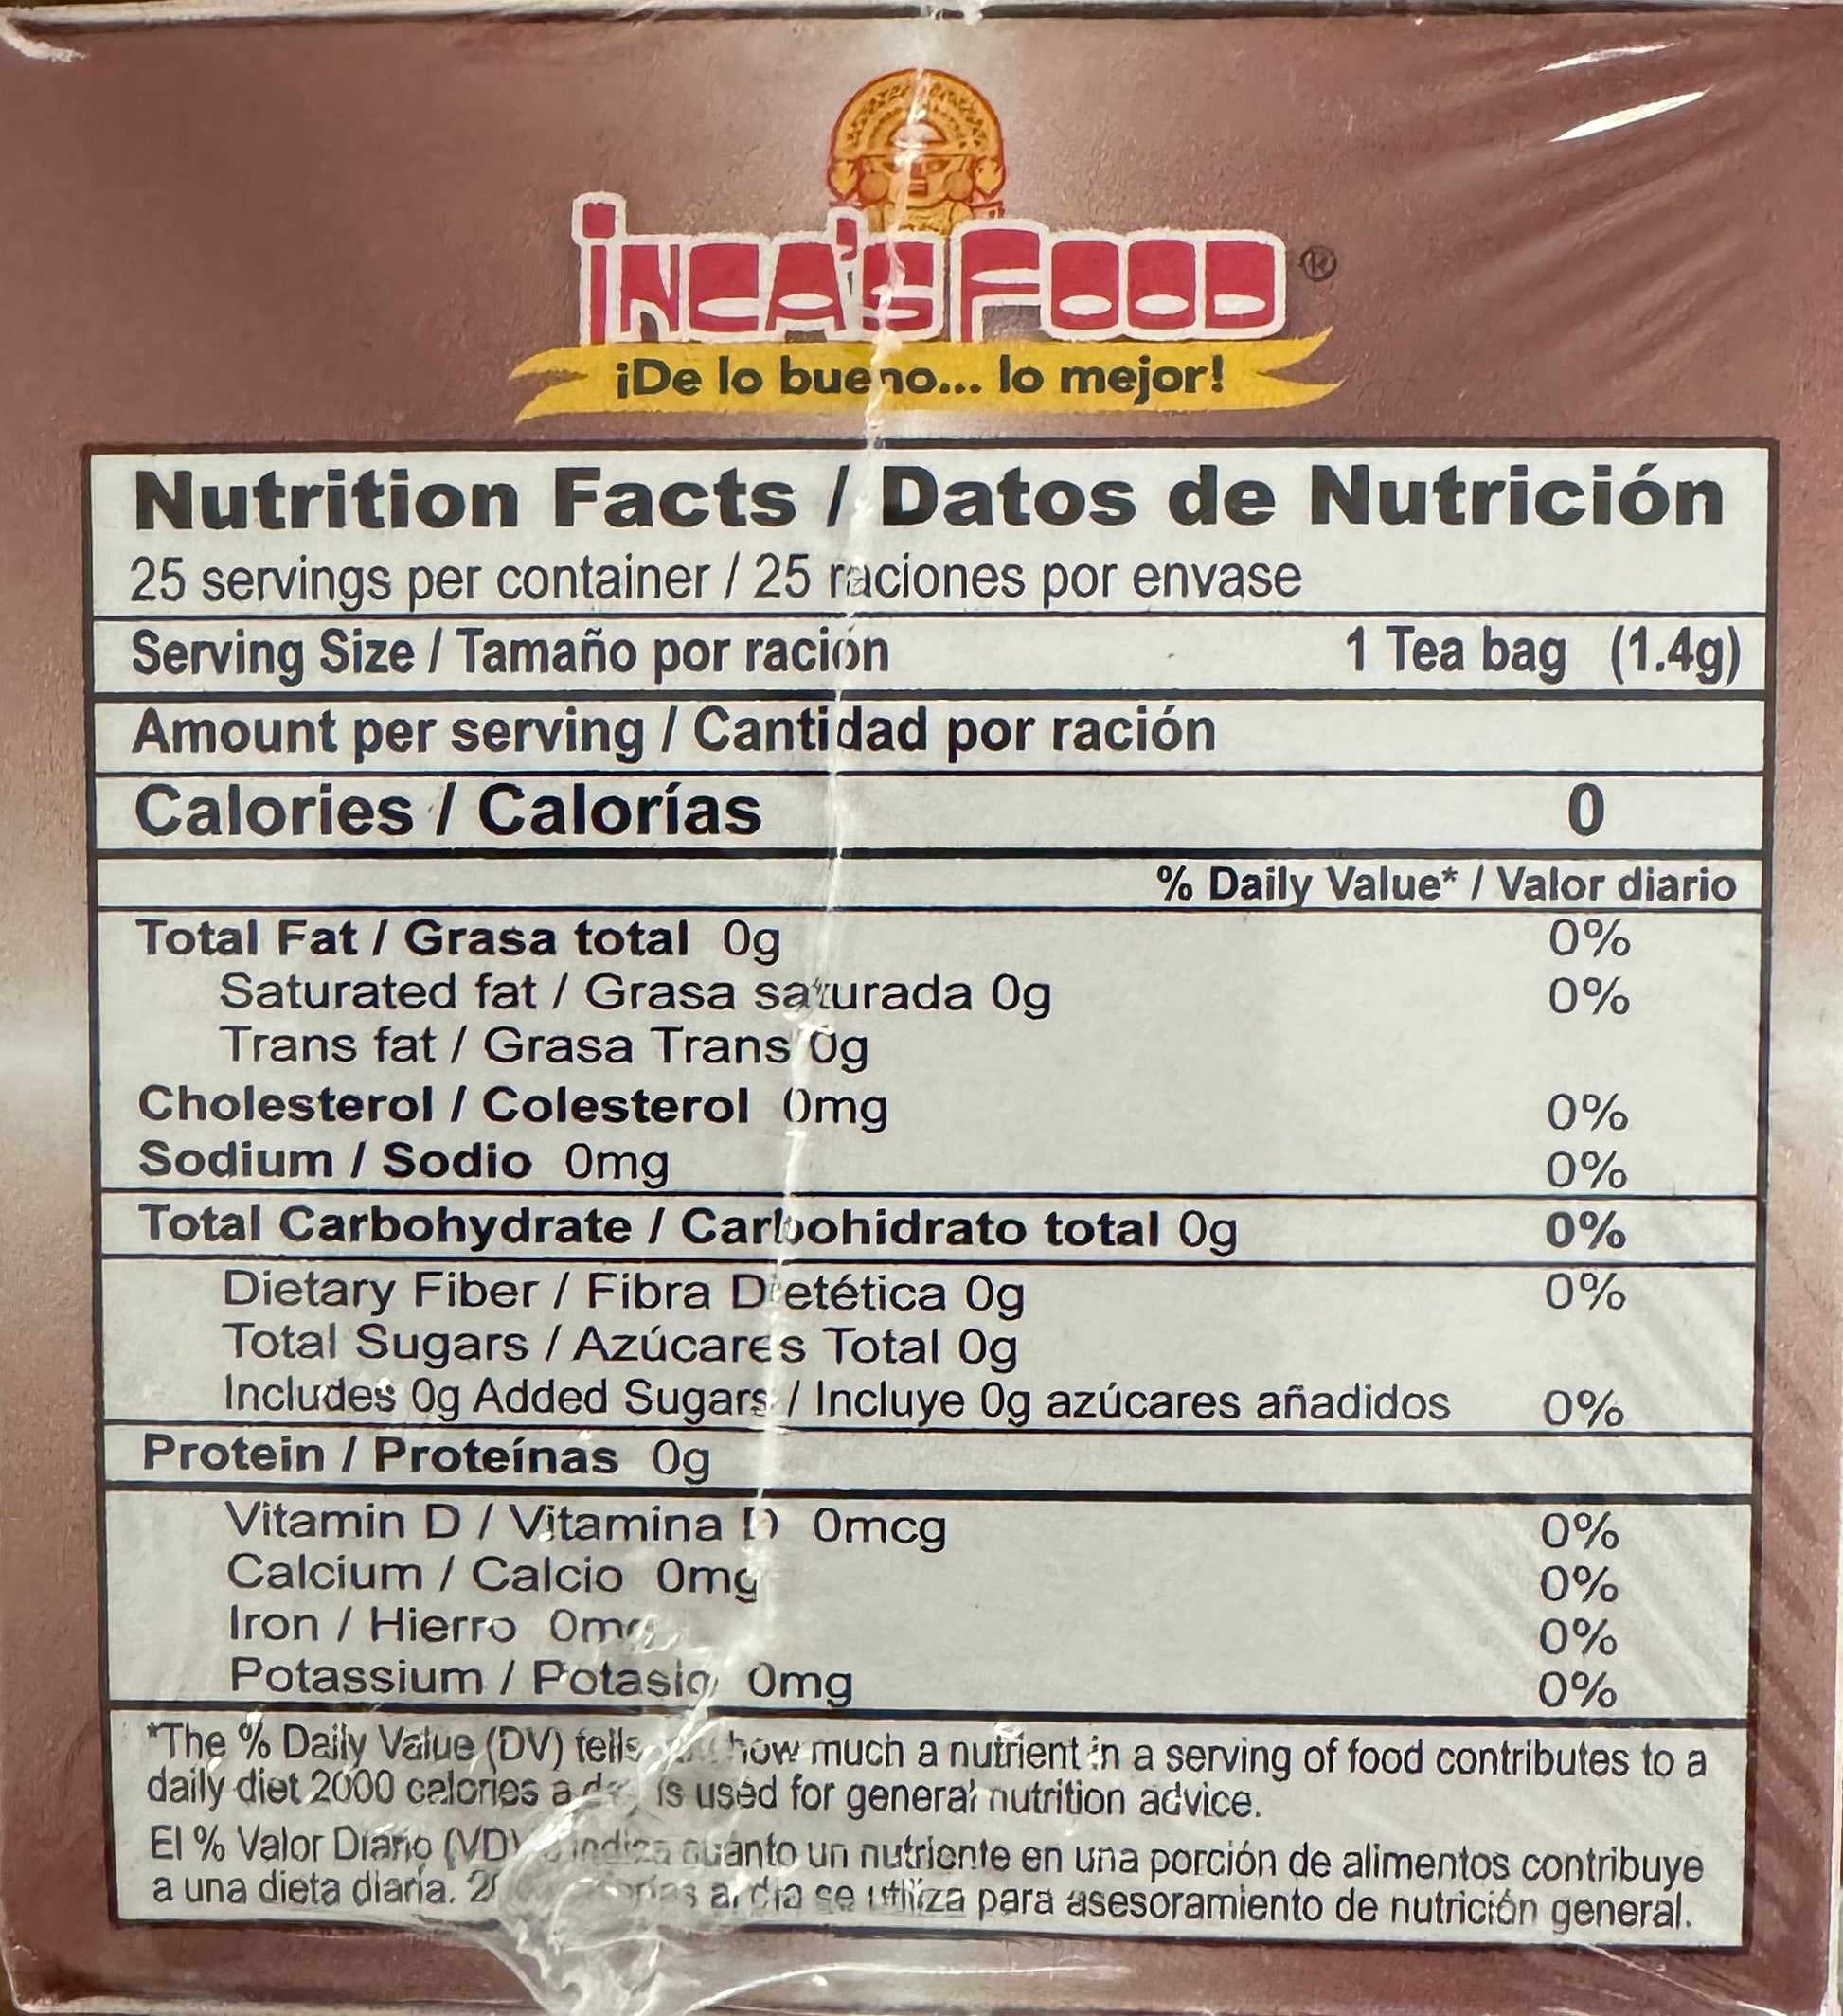 Inca's food yacón tea bags nutrition